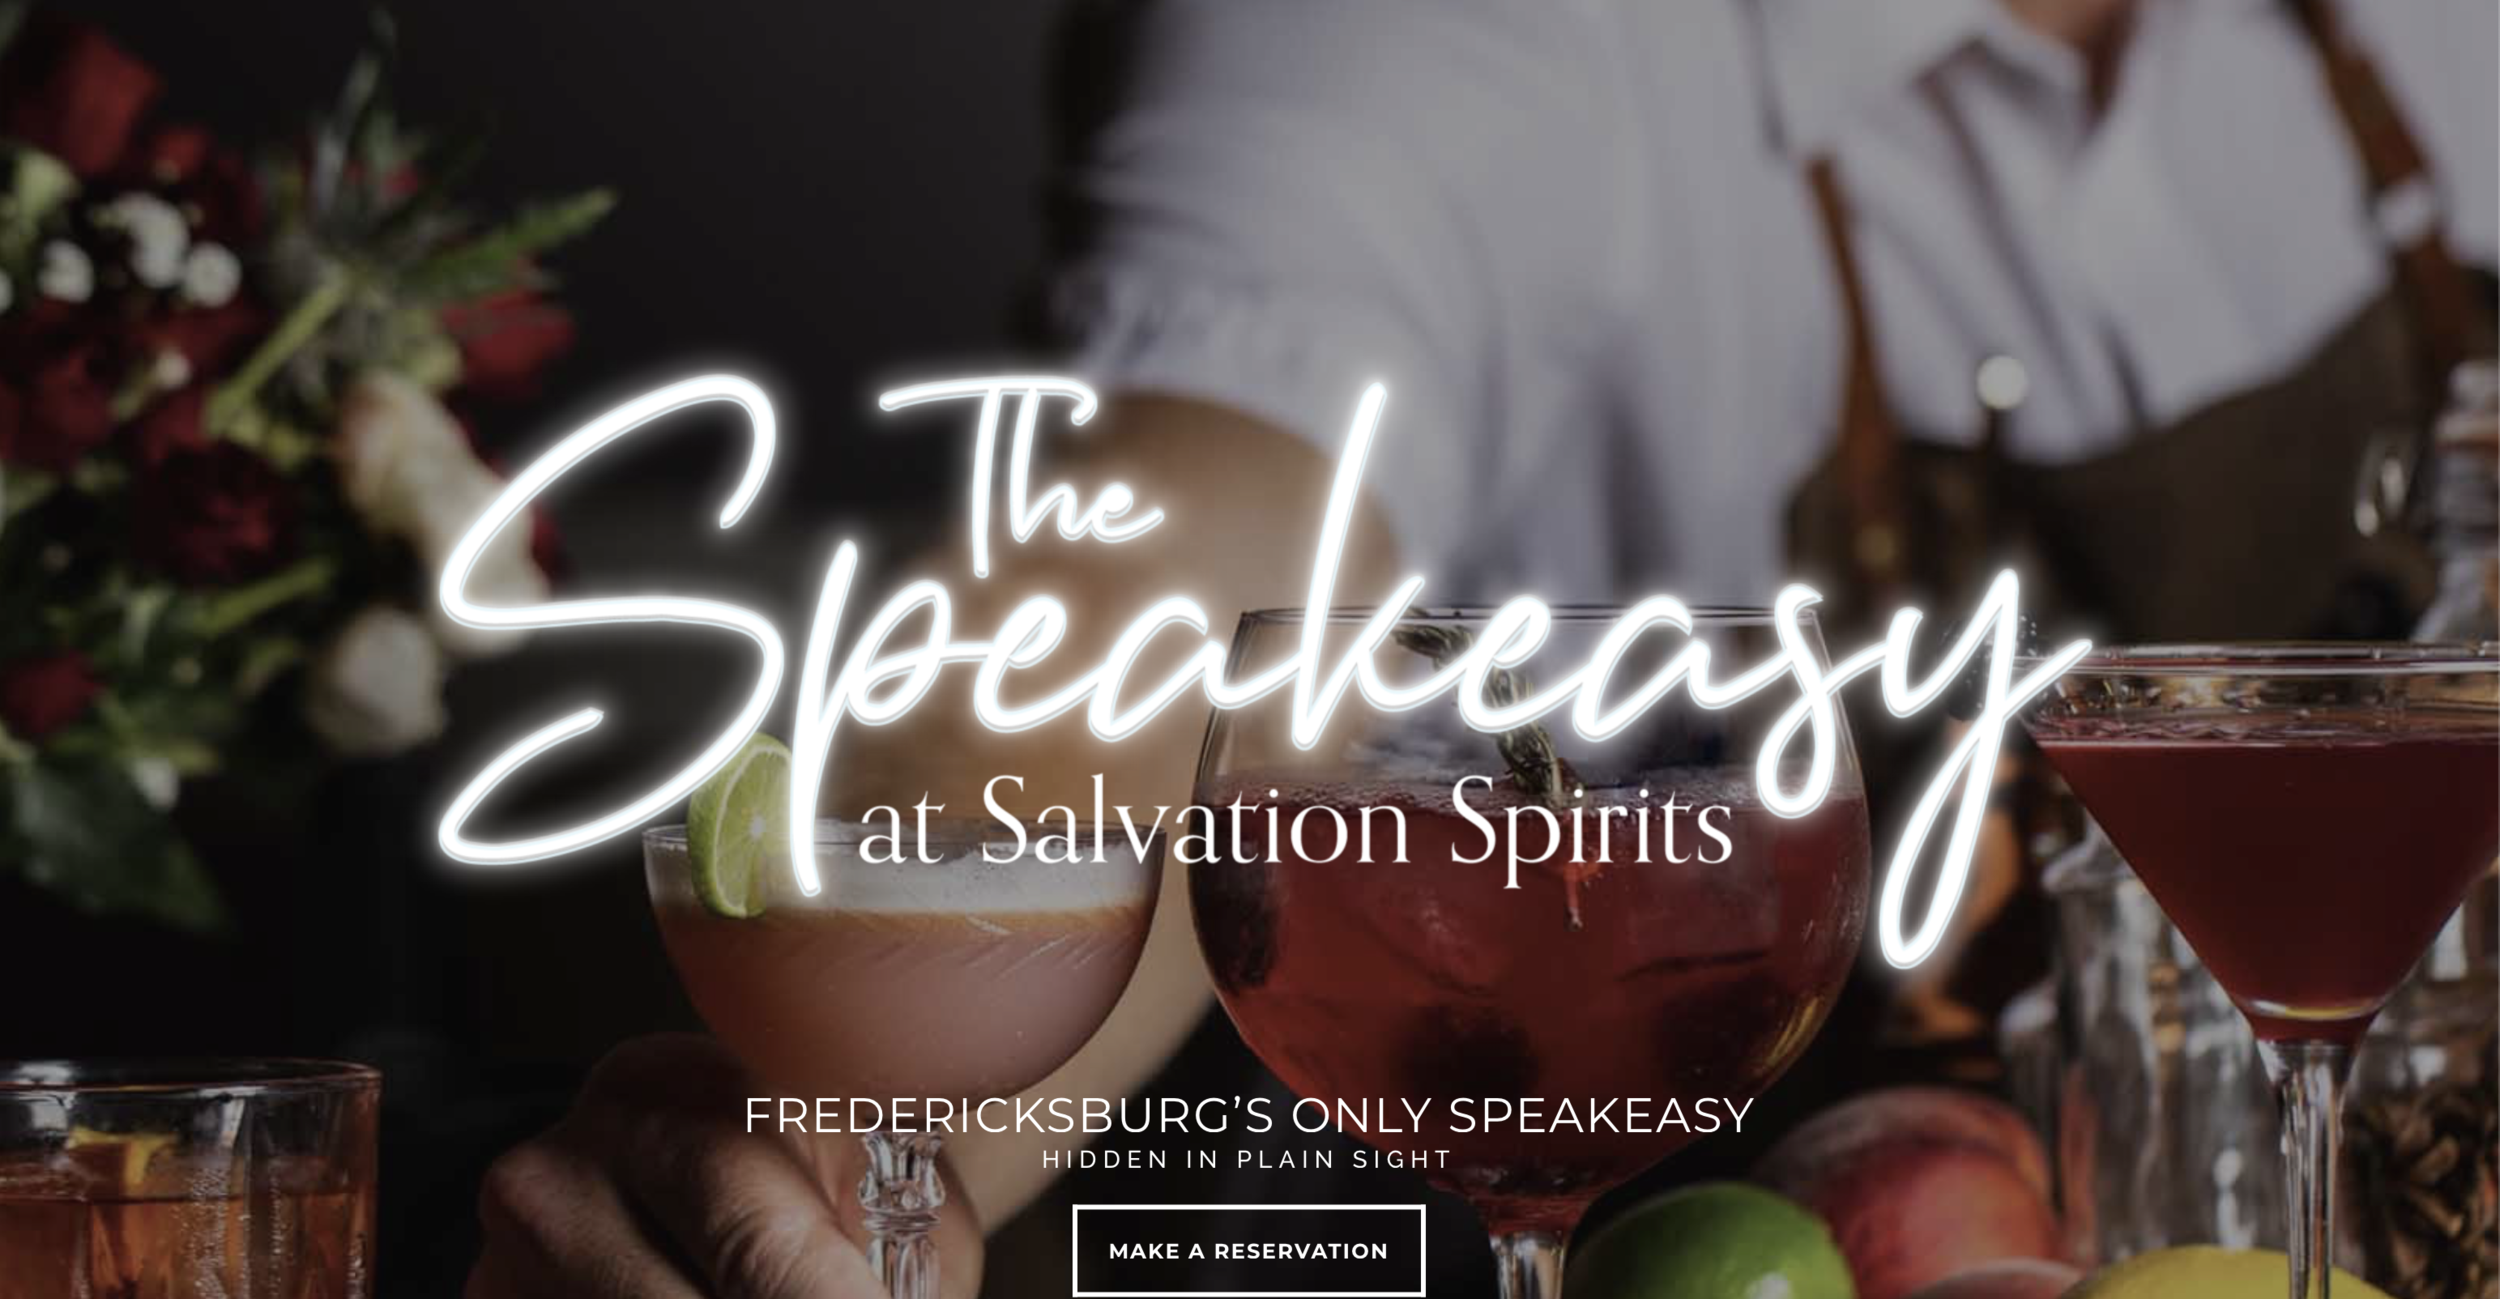 Visit The Speakeasy at Salvation Spirits